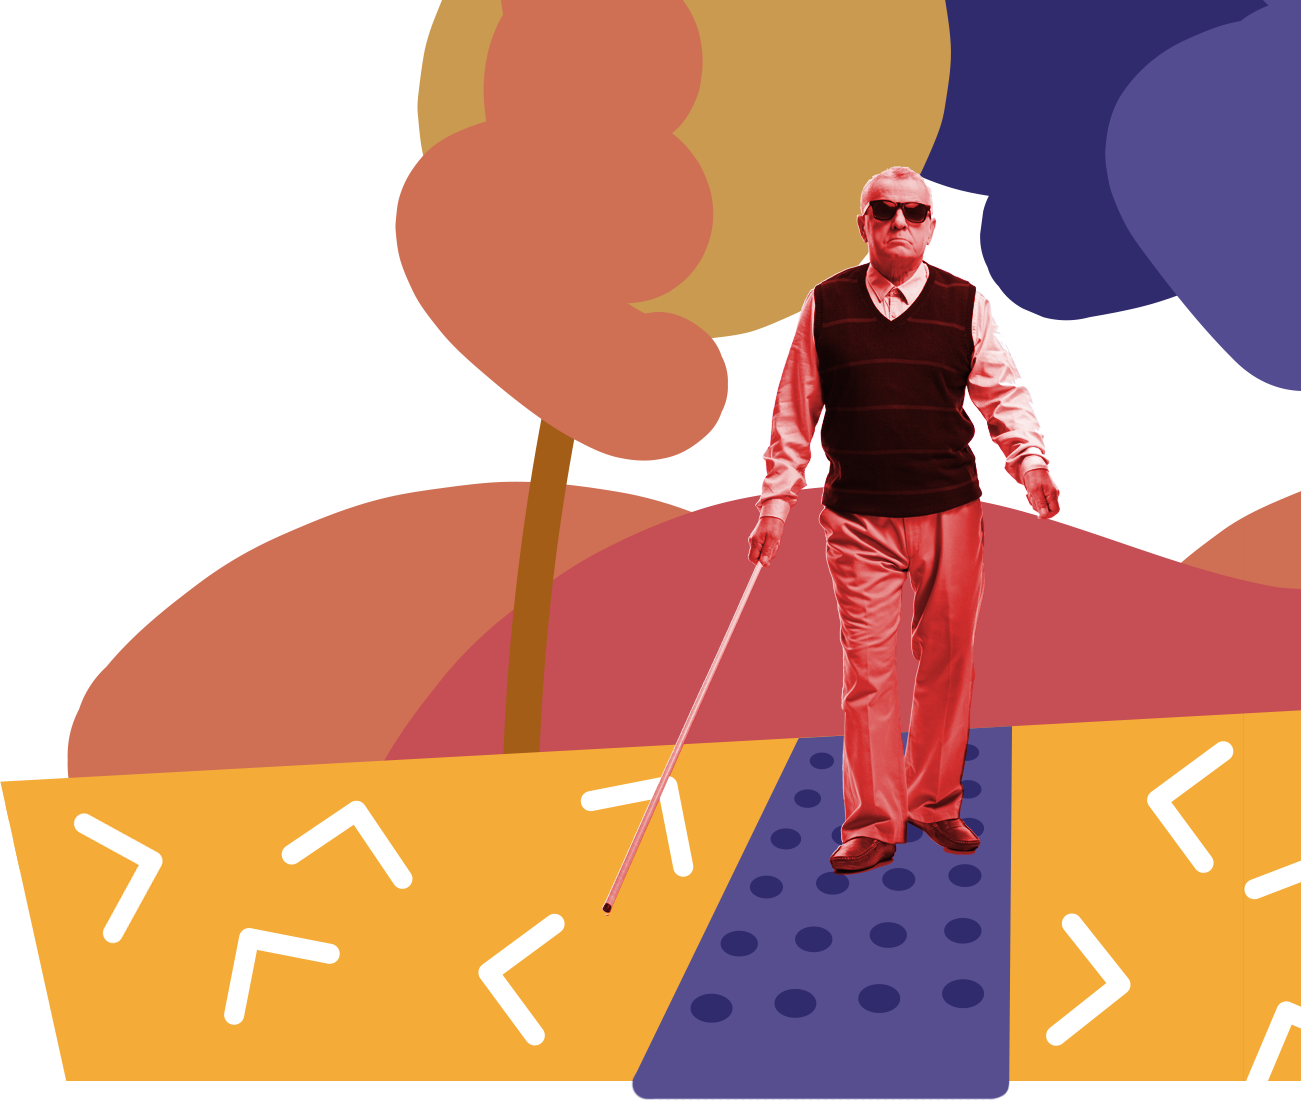 Homem cego caminhando em um parque com piso tátil em cenário construído de forma lúdica e cheio de cores.